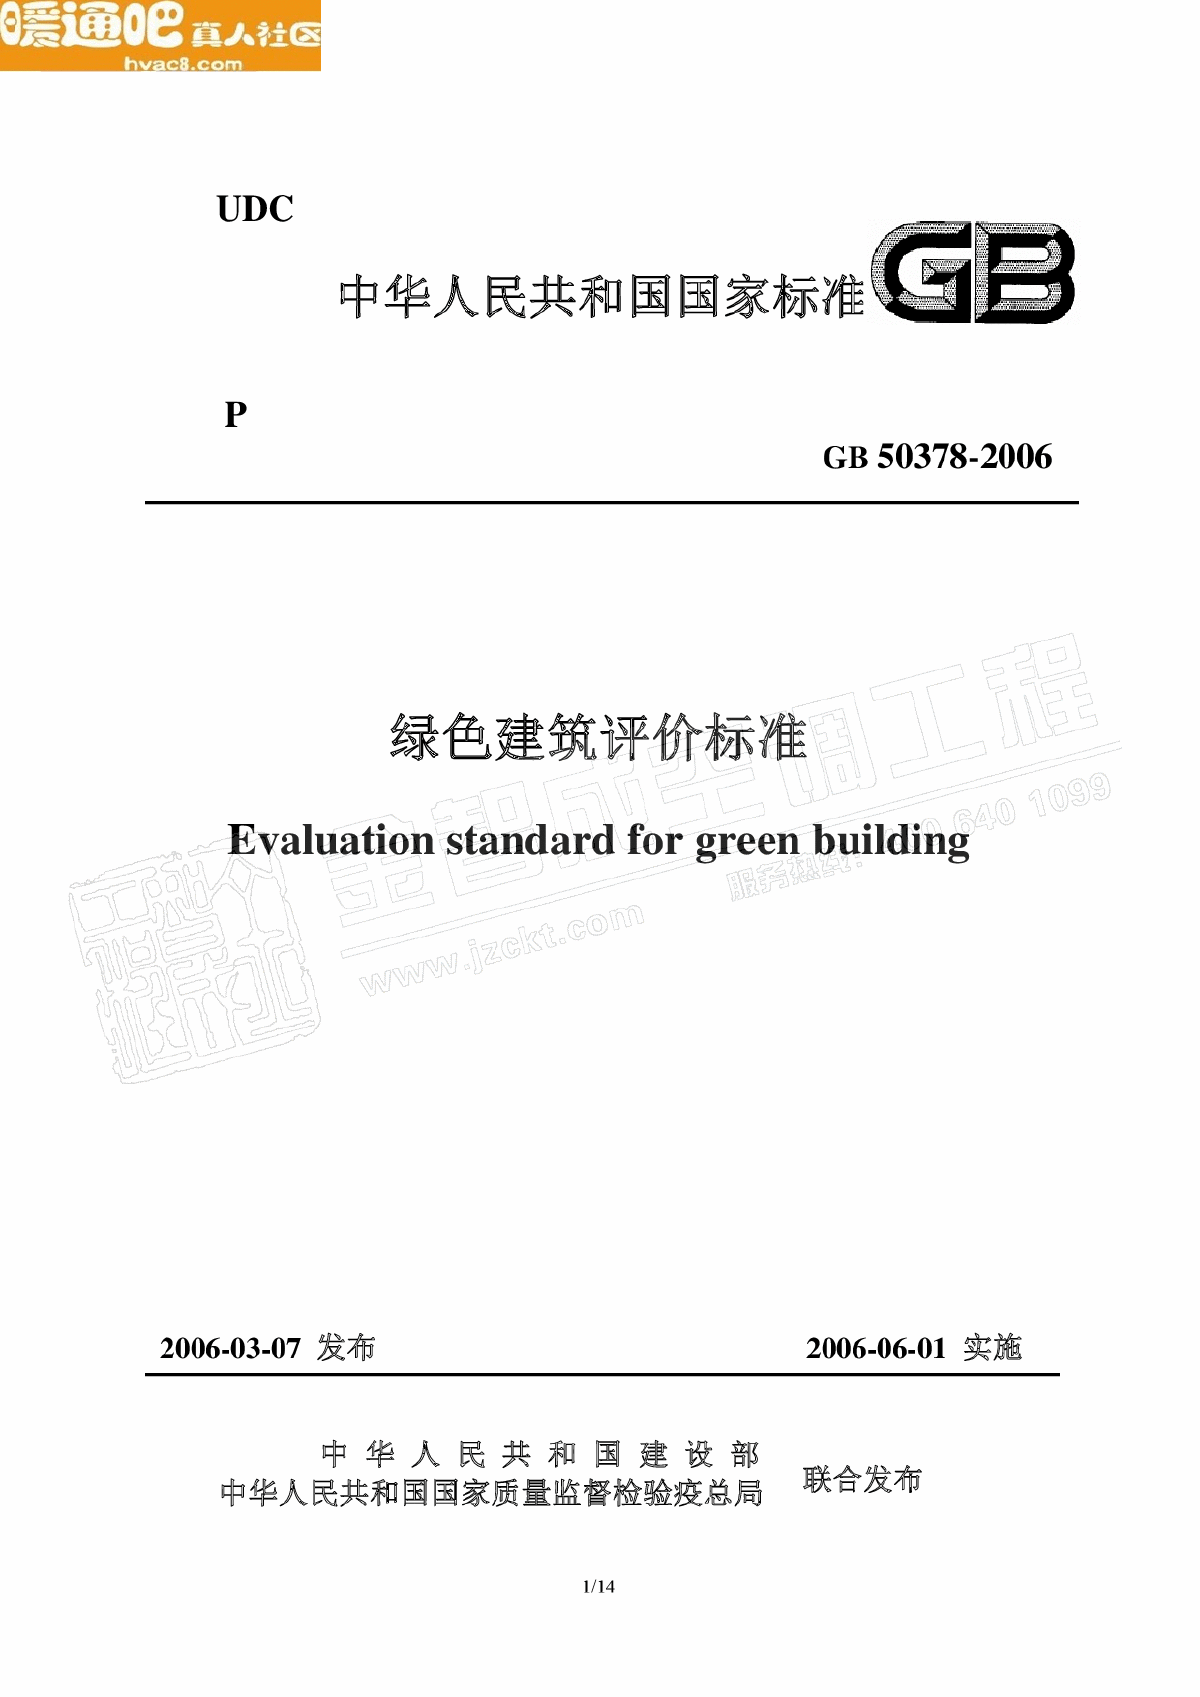 GB503782006绿色建筑评价标准